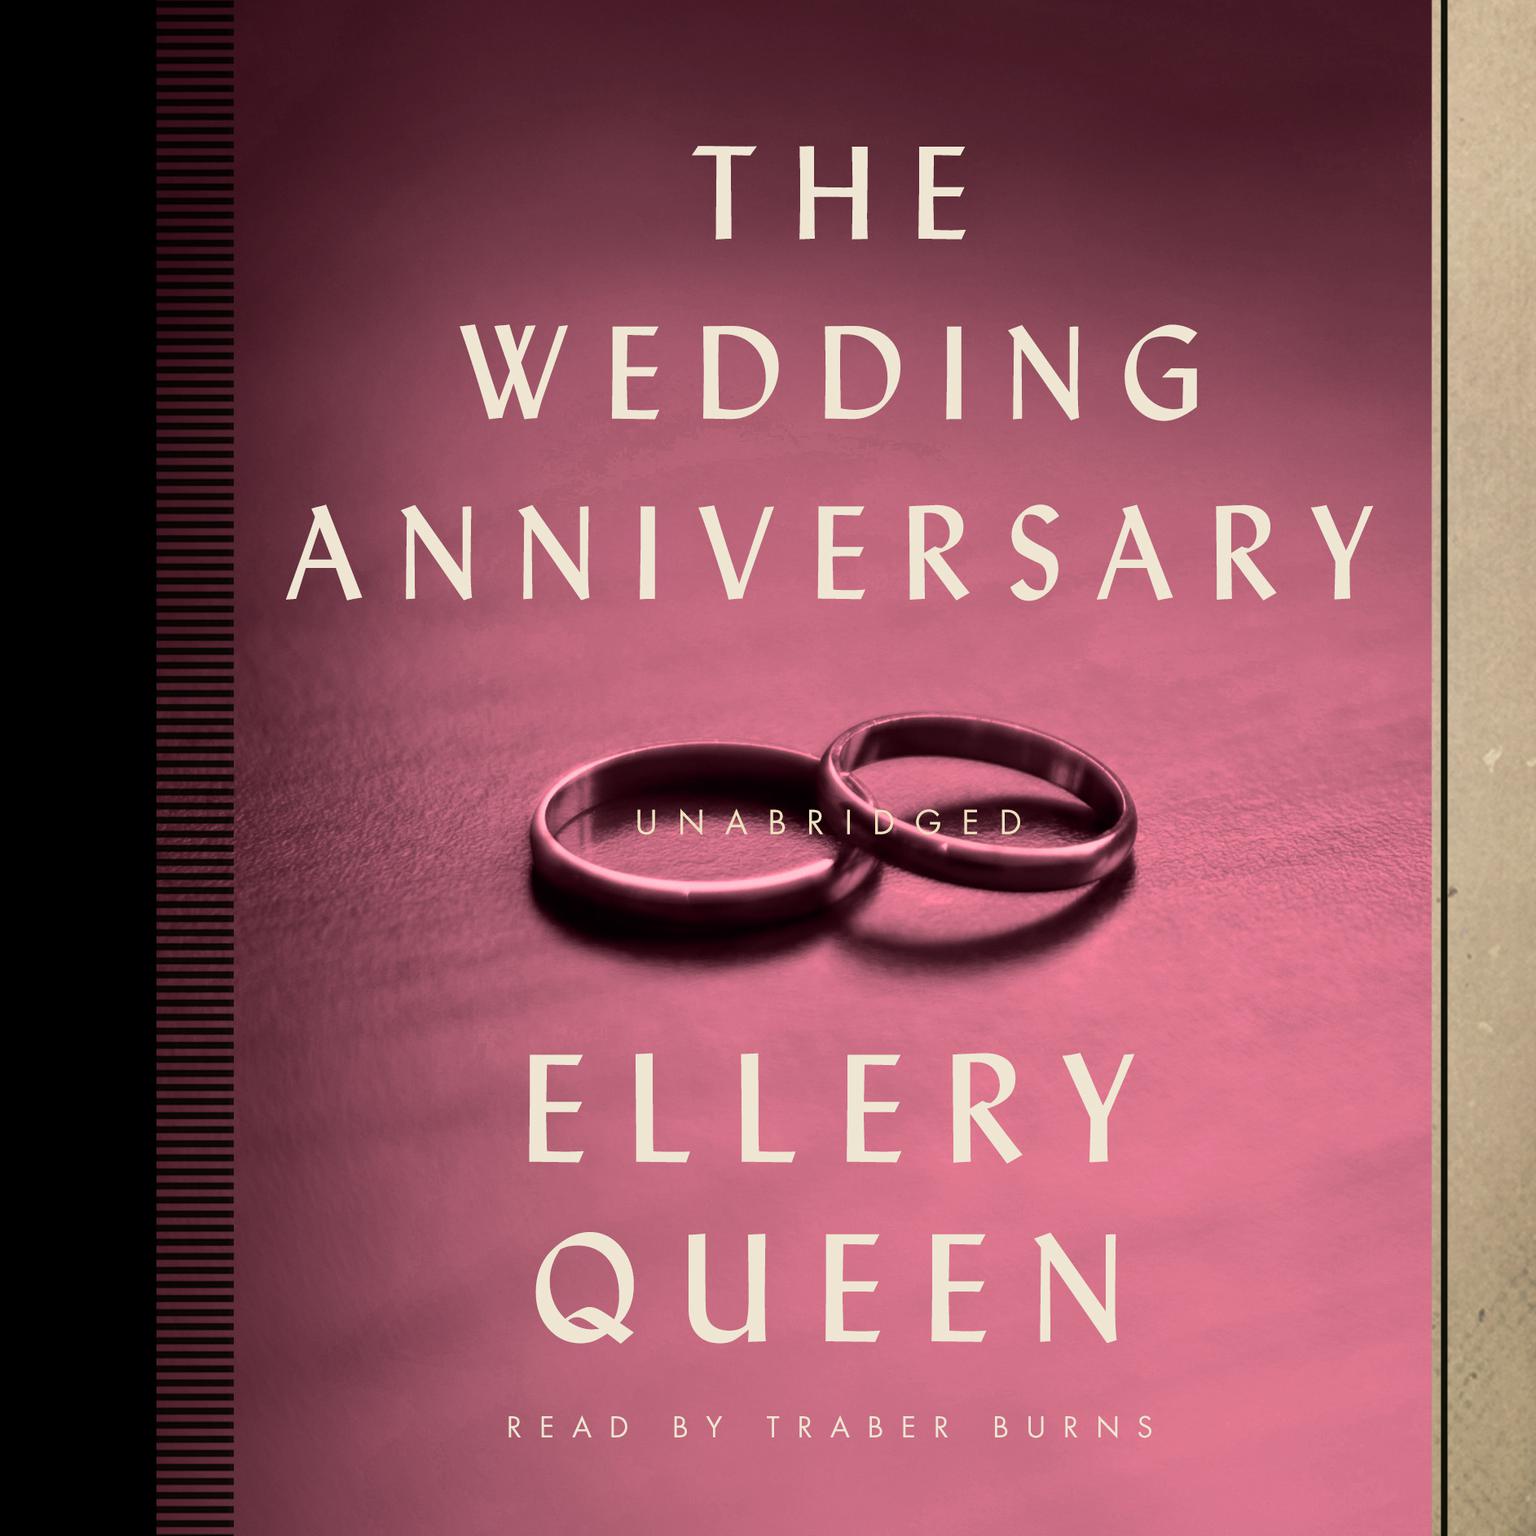 Wedding Anniversary Audiobook, by Ellery Queen